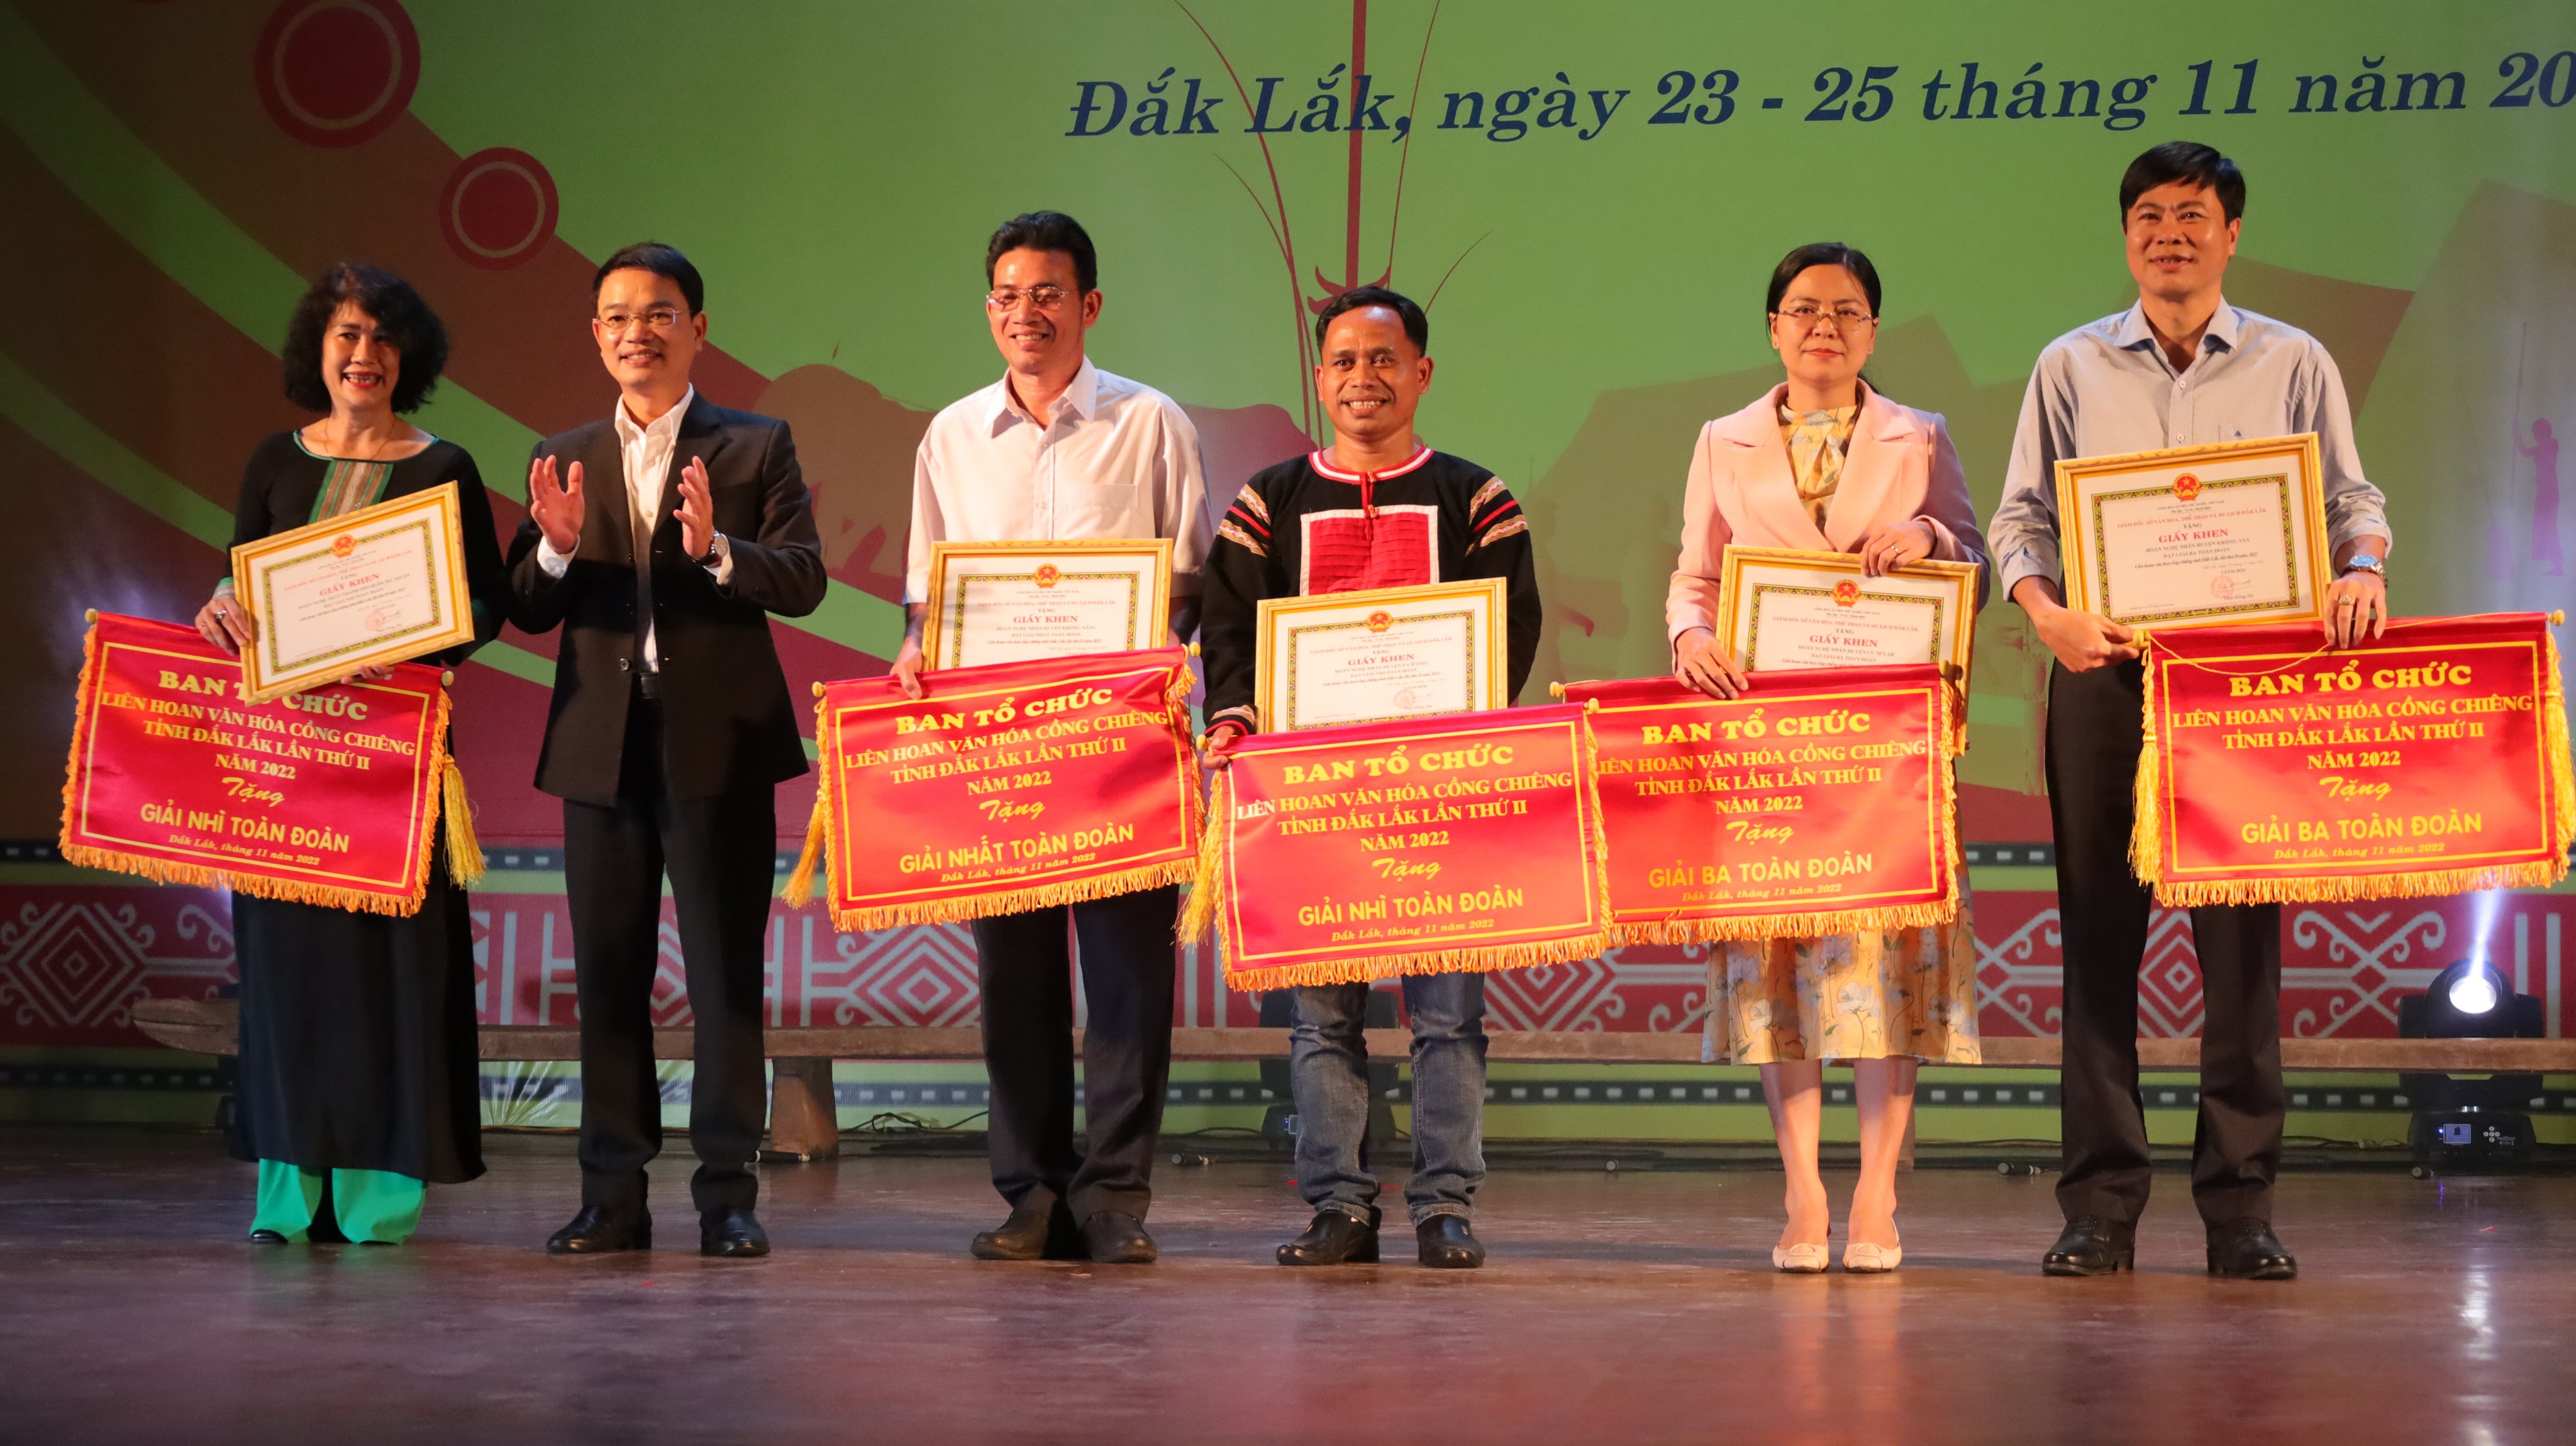 Liên hoan Văn hóa cồng chiêng tỉnh Đắk Lắk lần thứ 2, năm 2022 : Huyện Krông Năng xuất sắc đạt giải Nhất